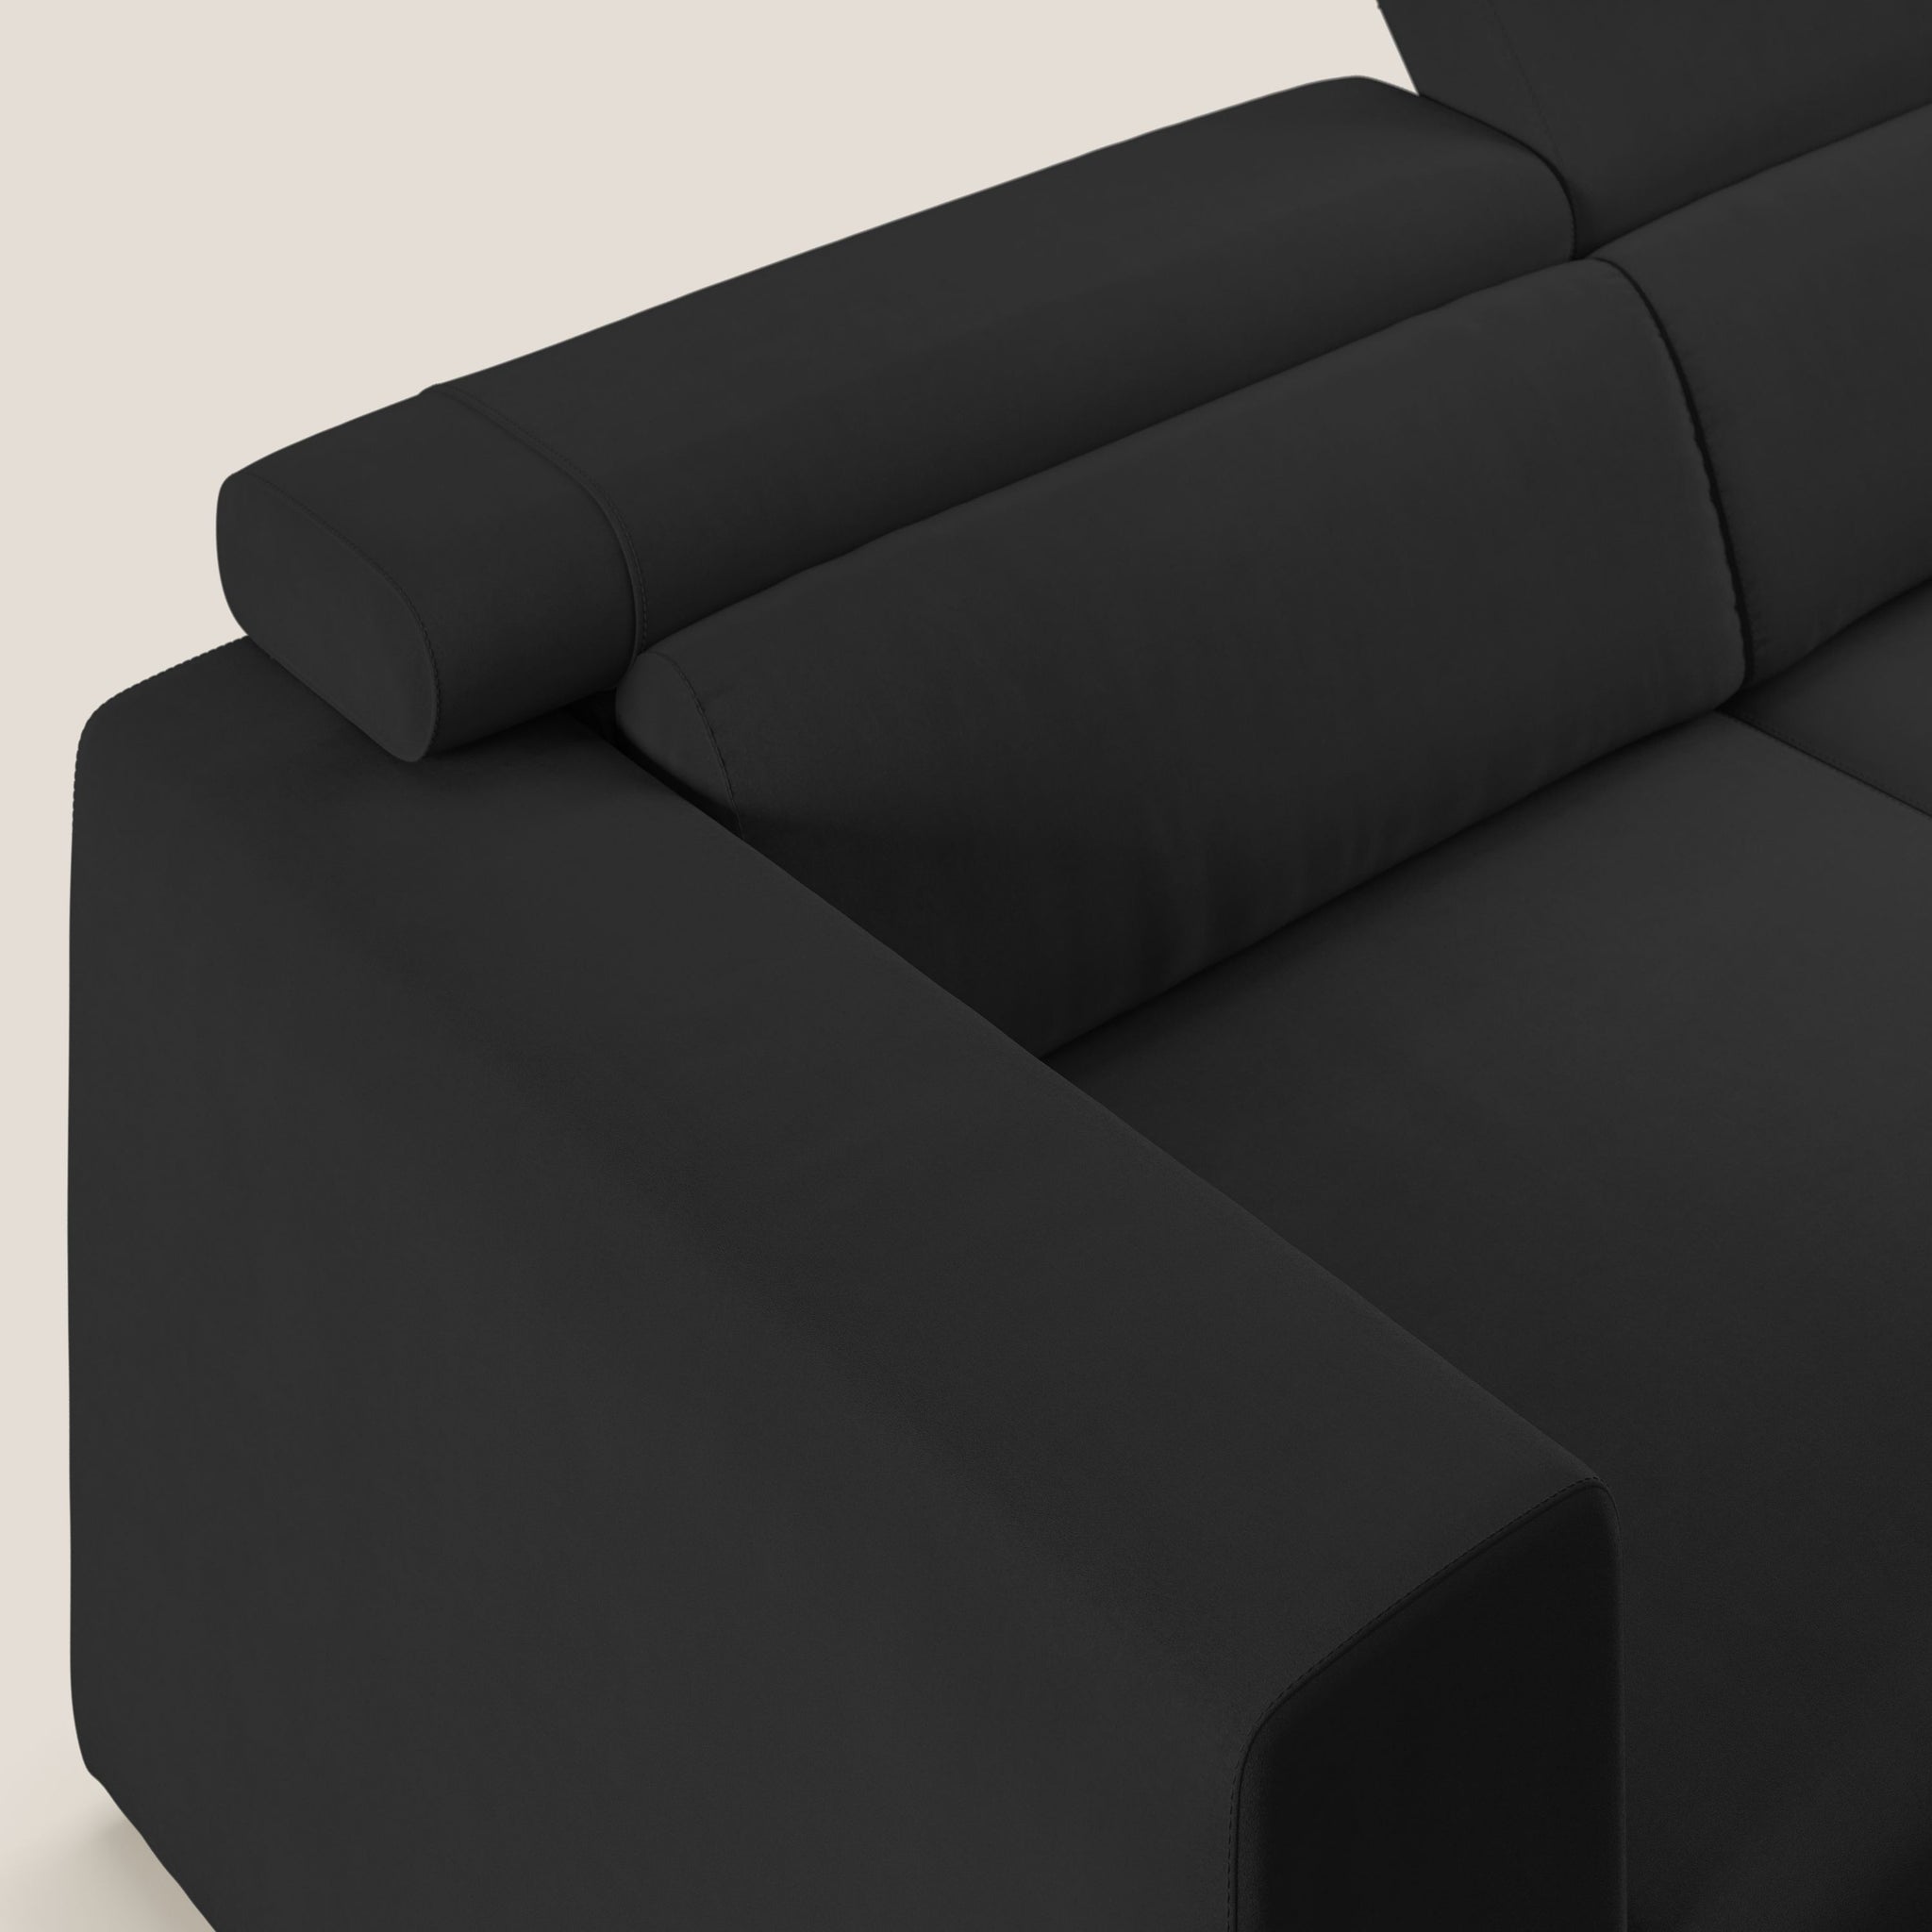 Vegas divano con poggiatesta reclinabili in microfibra smacchiabile T11